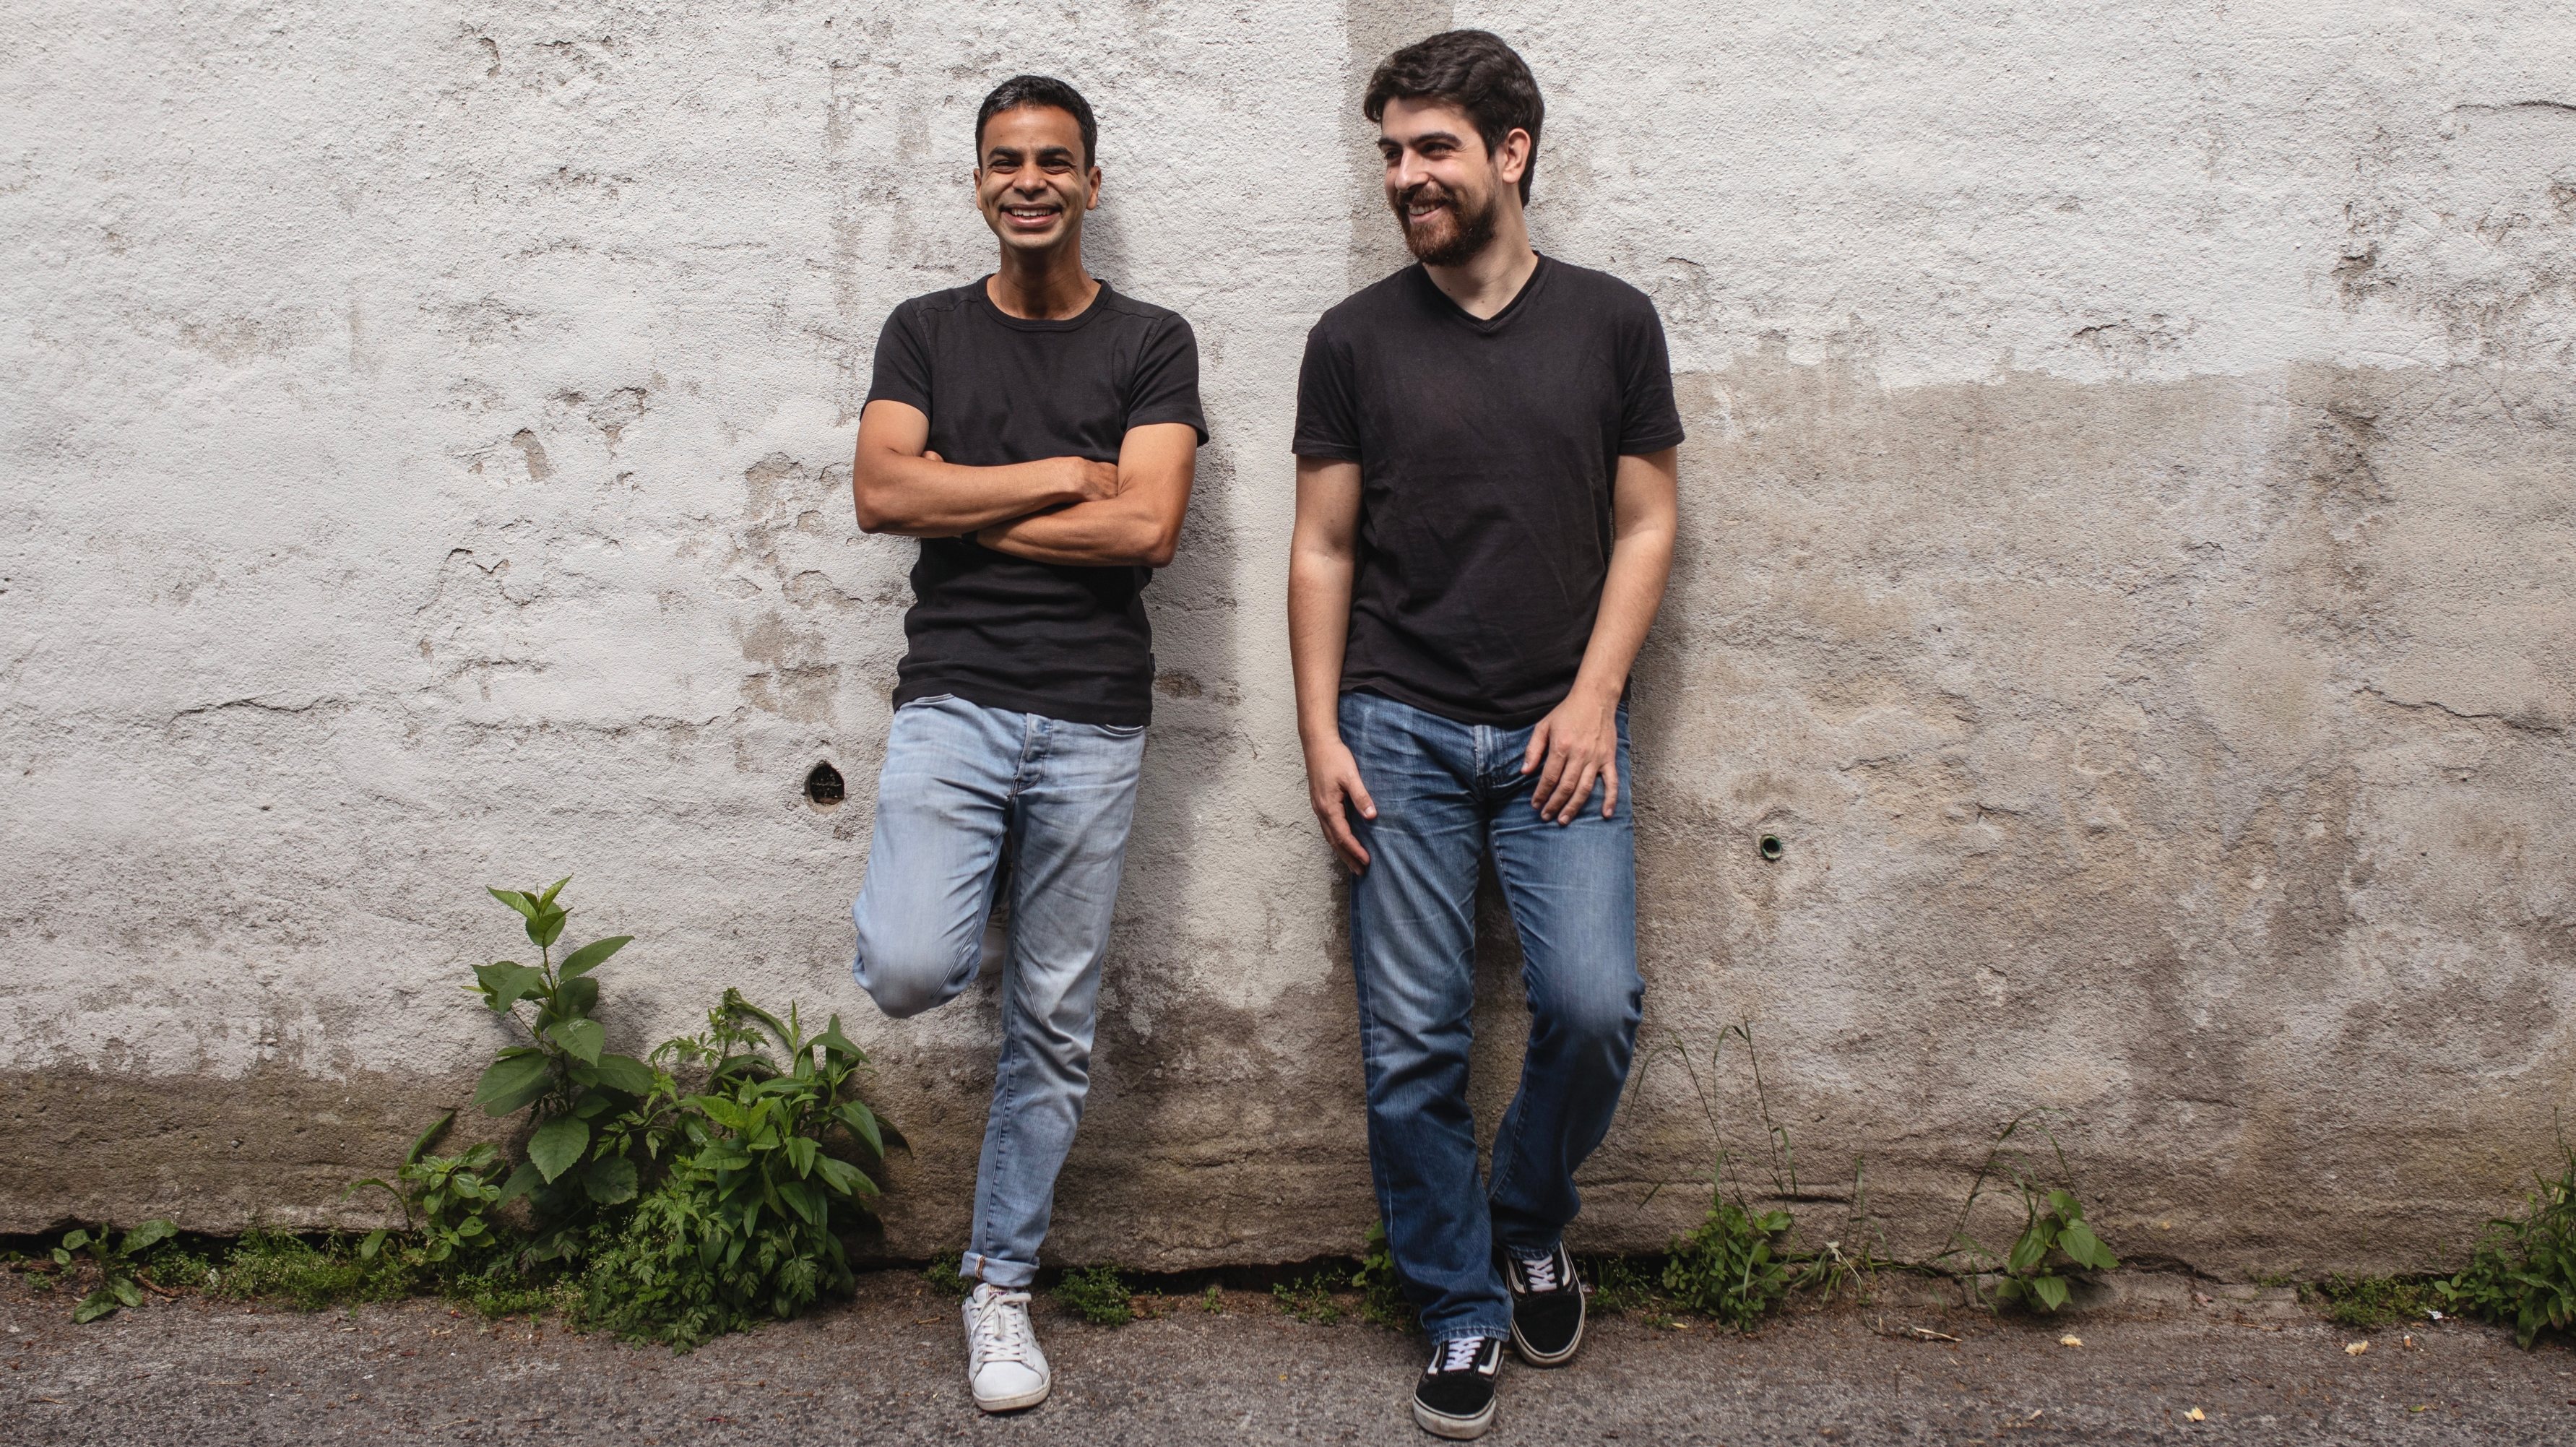 Rui Bento e Nuno Rodrigues lançaram a Kitch em 2020 e empregam 17 pessoas